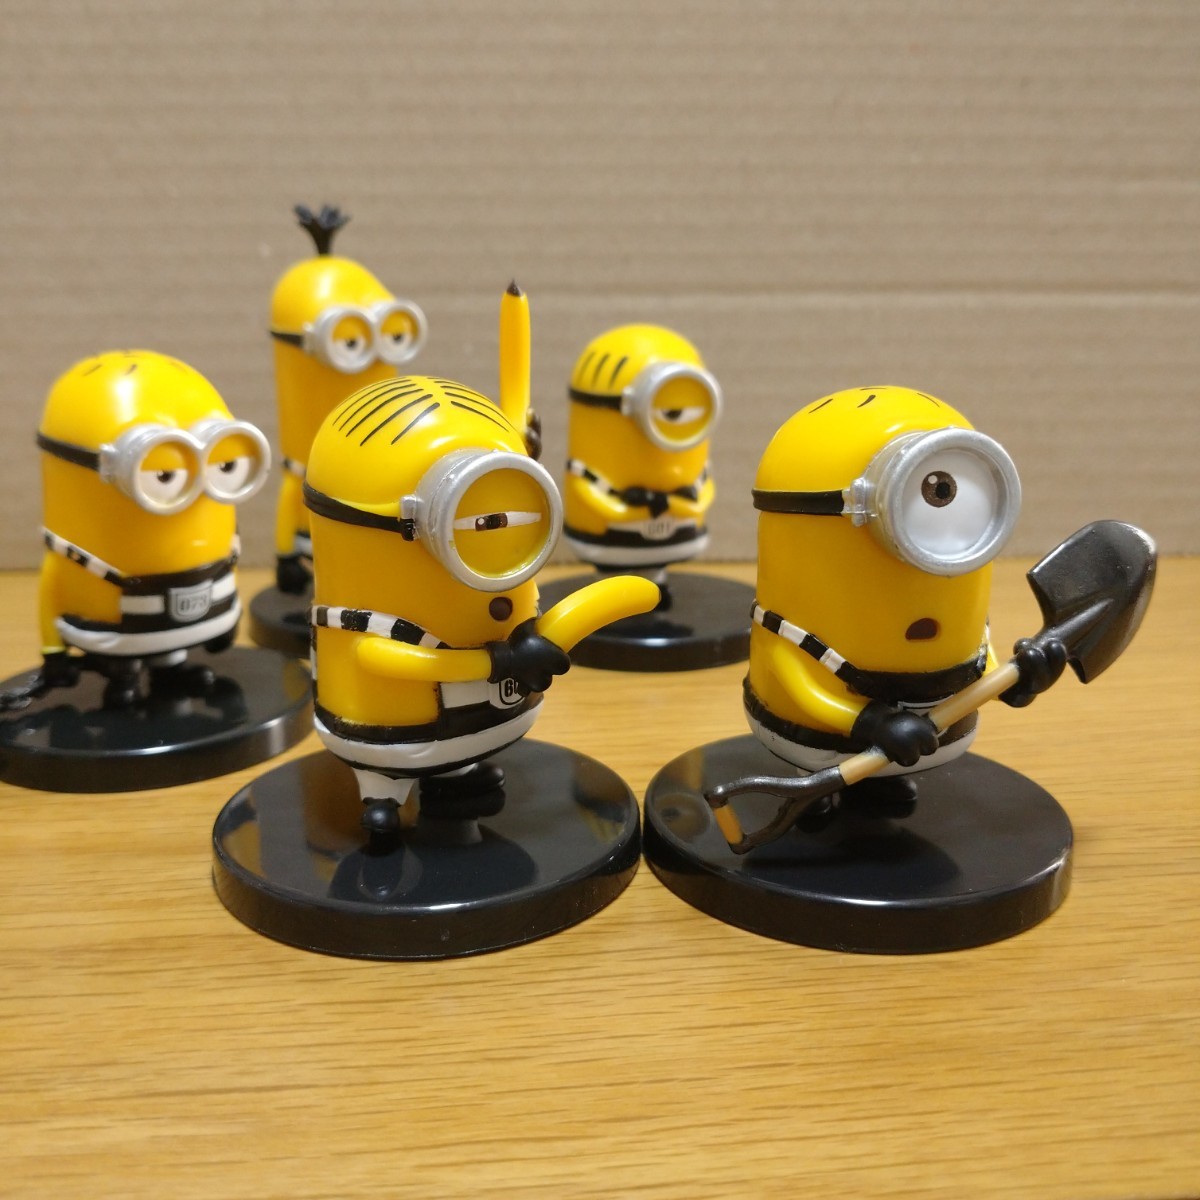 minions minion. person figure set Mini on z Mini on figure collection ornament decoration ga tea collection mascot prisoner